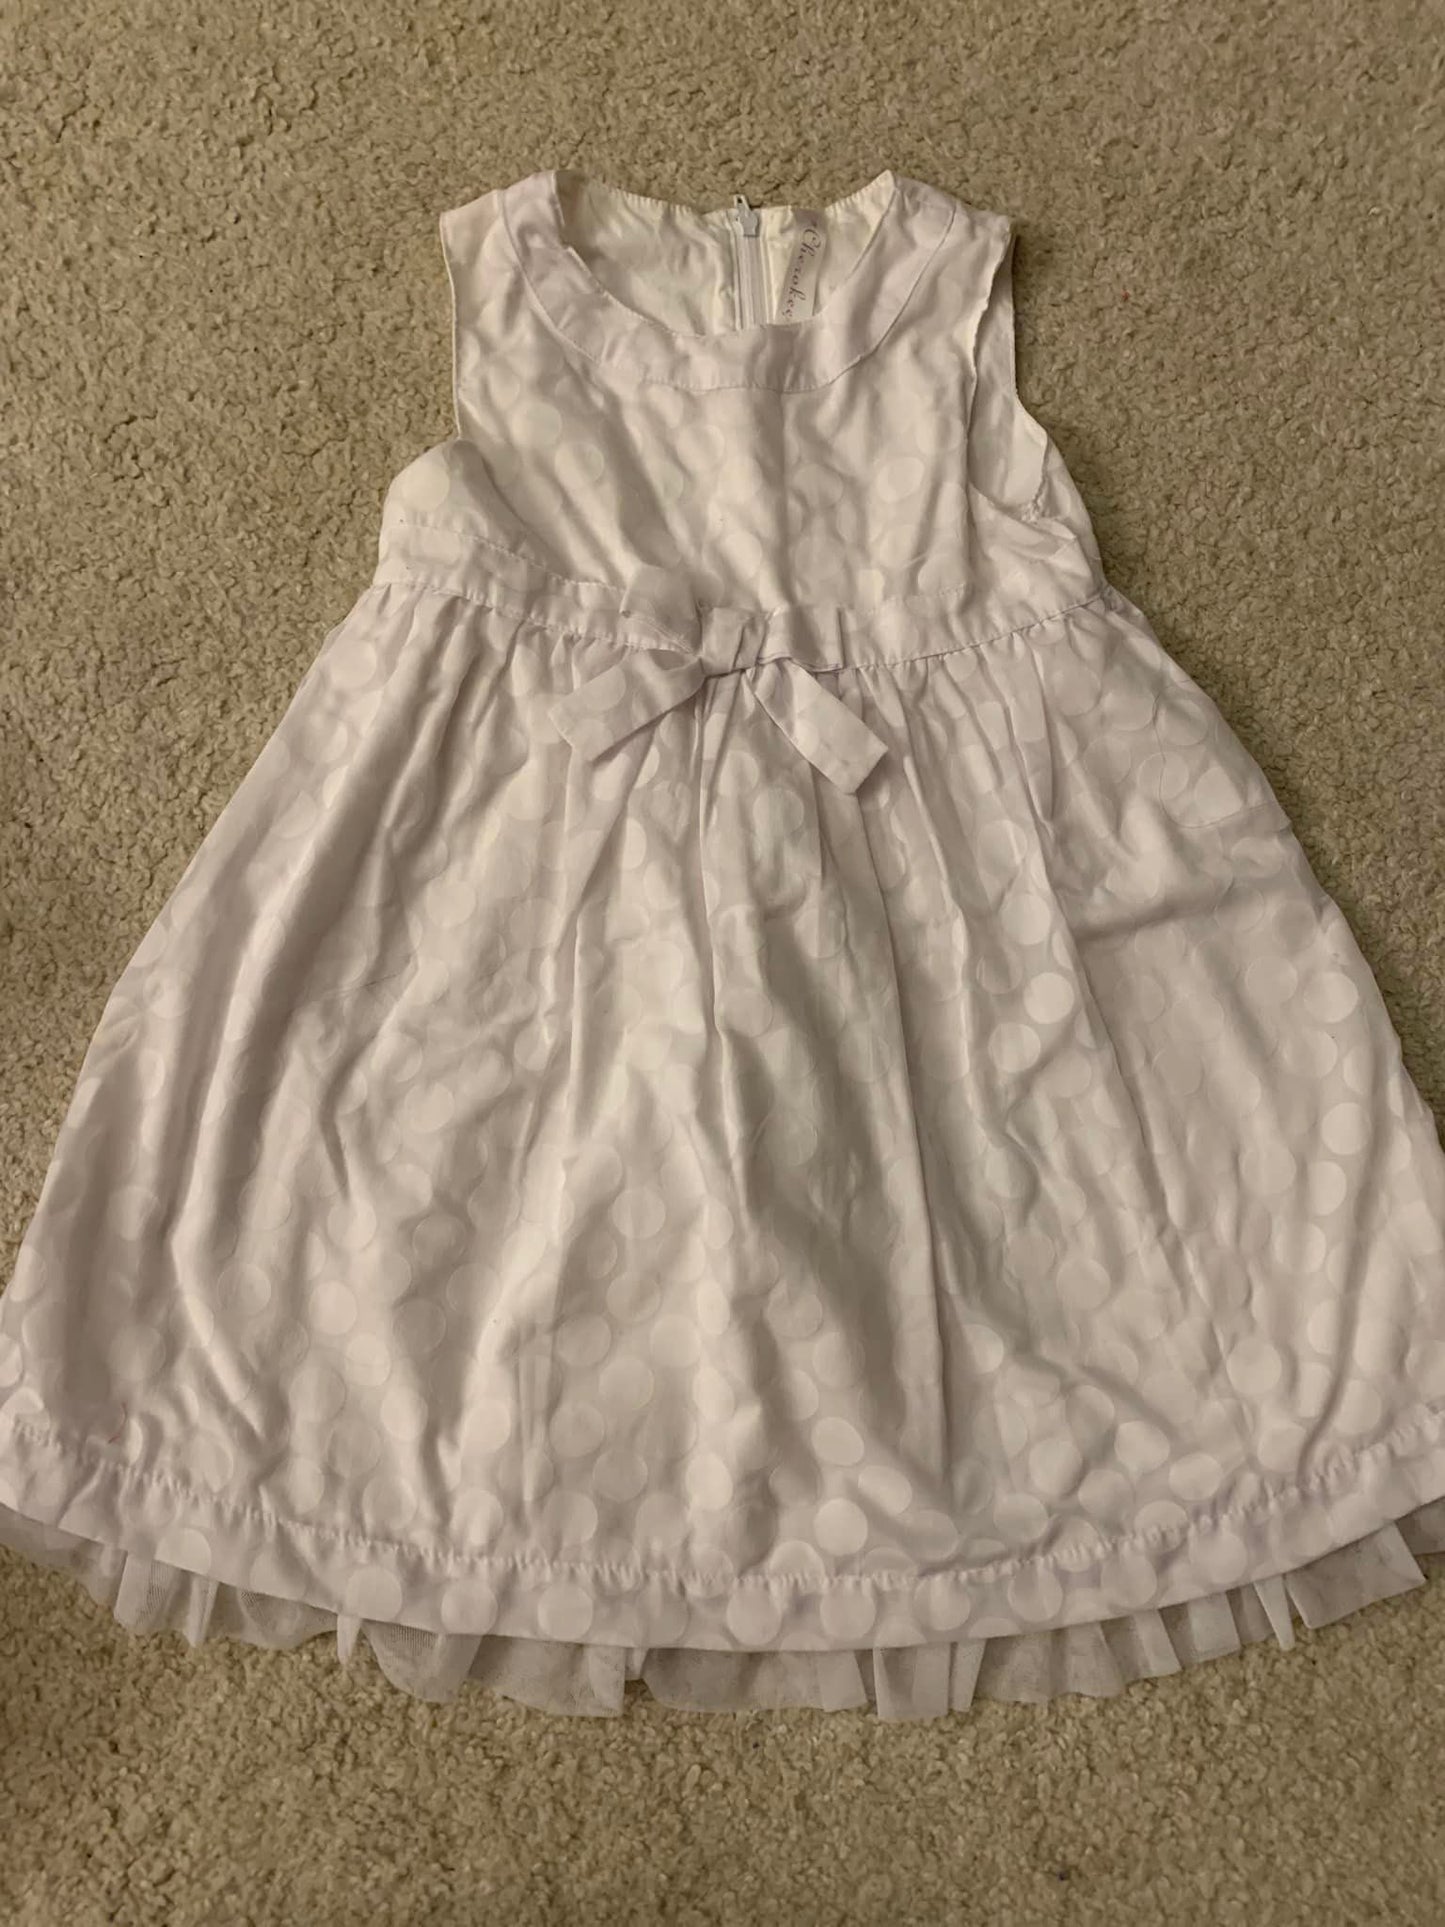 4T Girls Easter Dress (White)